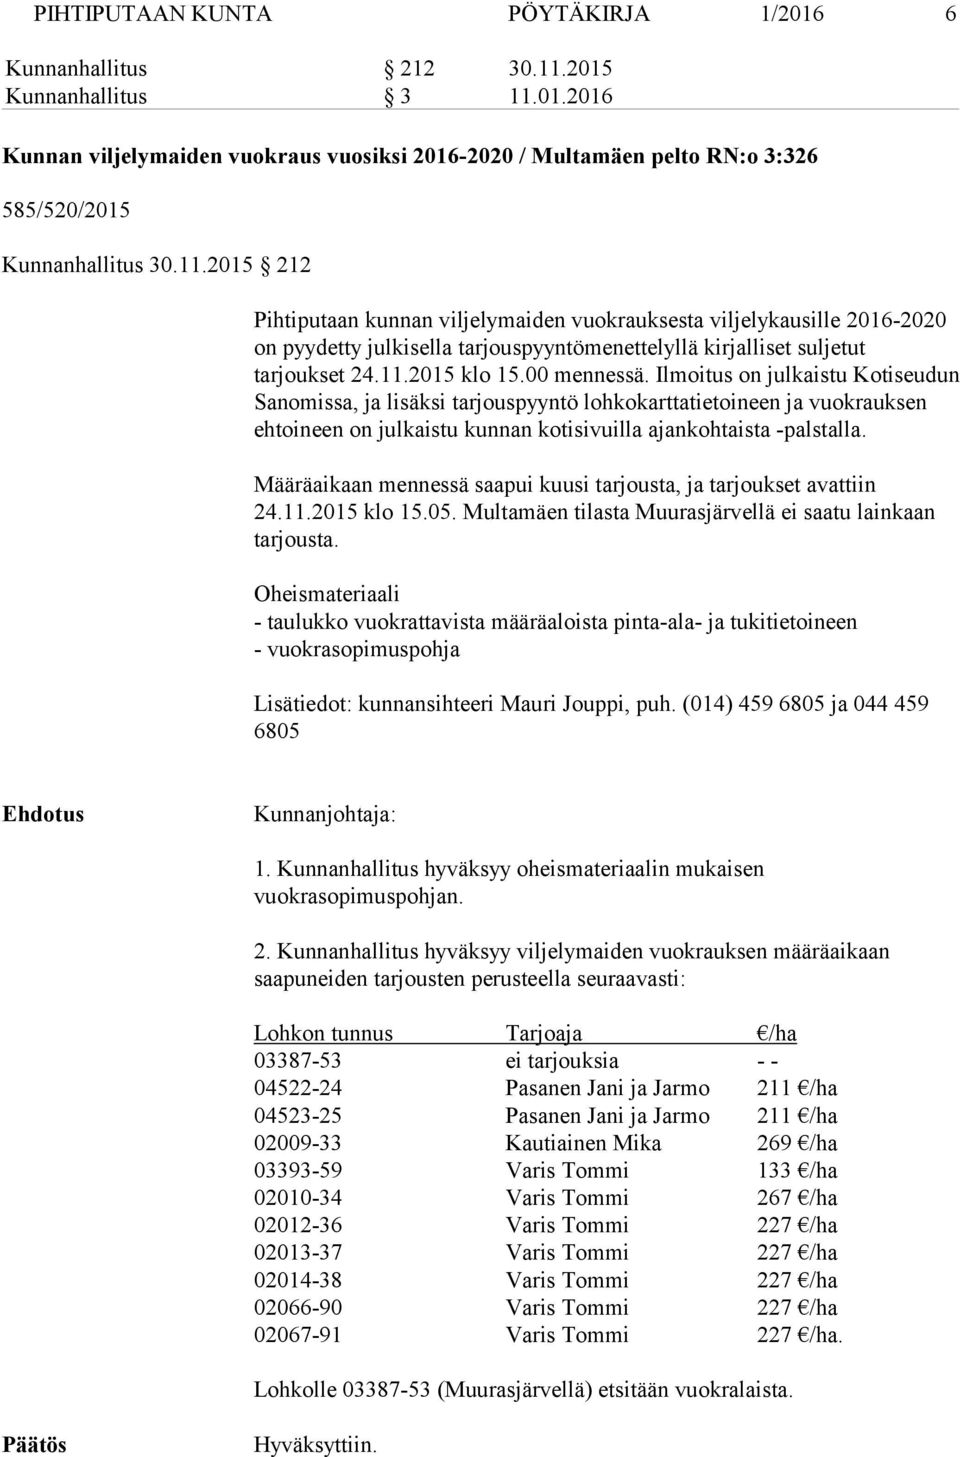 Ilmoitus on julkaistu Kotiseudun Sanomissa, ja lisäksi tarjouspyyntö lohkokarttatietoineen ja vuokrauksen ehtoineen on julkaistu kunnan kotisivuilla ajankohtaista -palstalla.